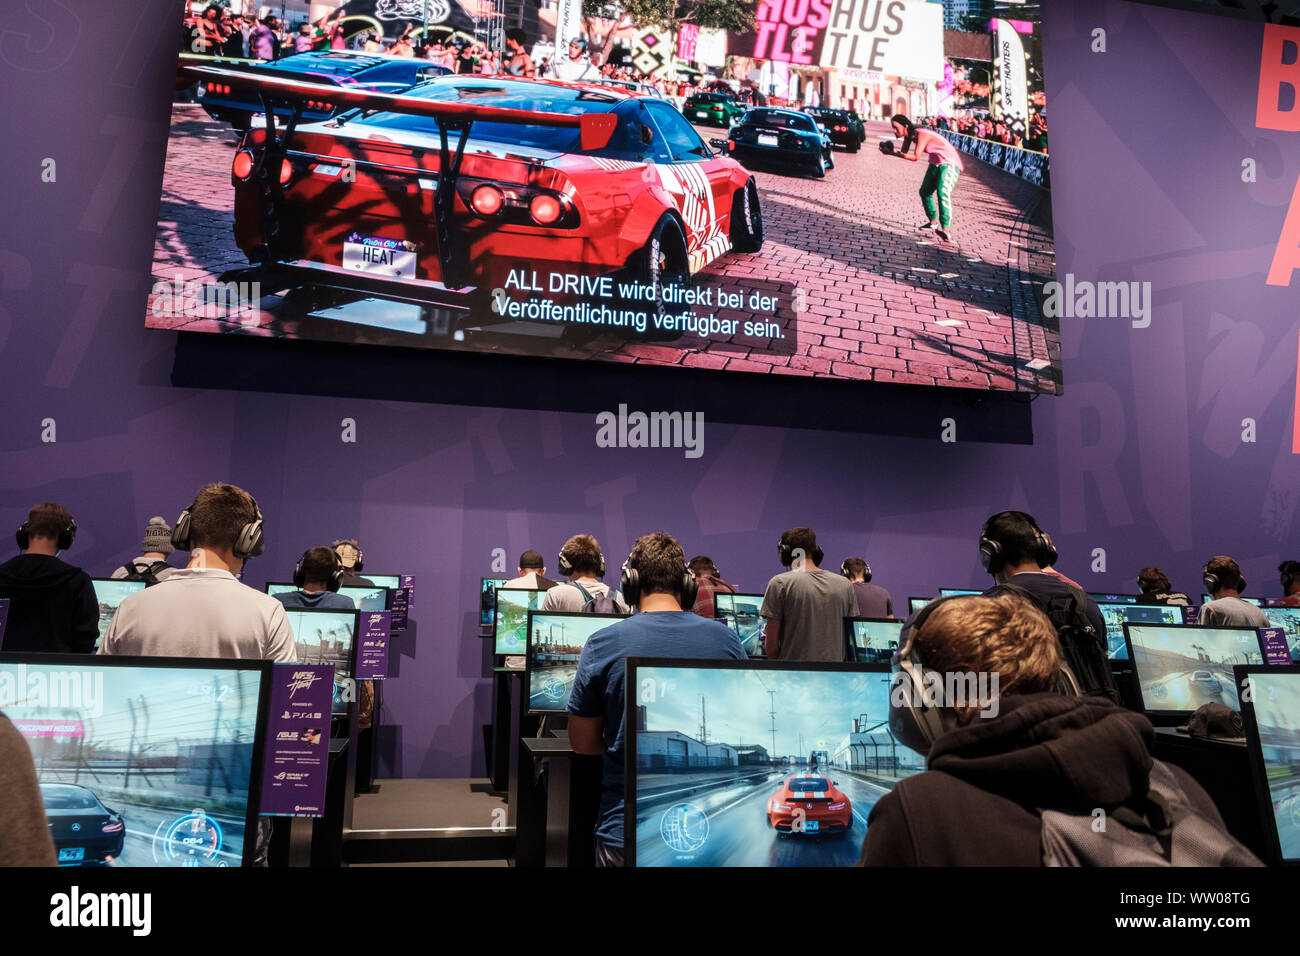 Besucher spielen die Autorennsimulation „Need for Speed Heat“ auf der gamescom , weltweit grösste Messe für Video- und Computerspiele in Köln, Deutschland, 21.8.2019 Stock Photo